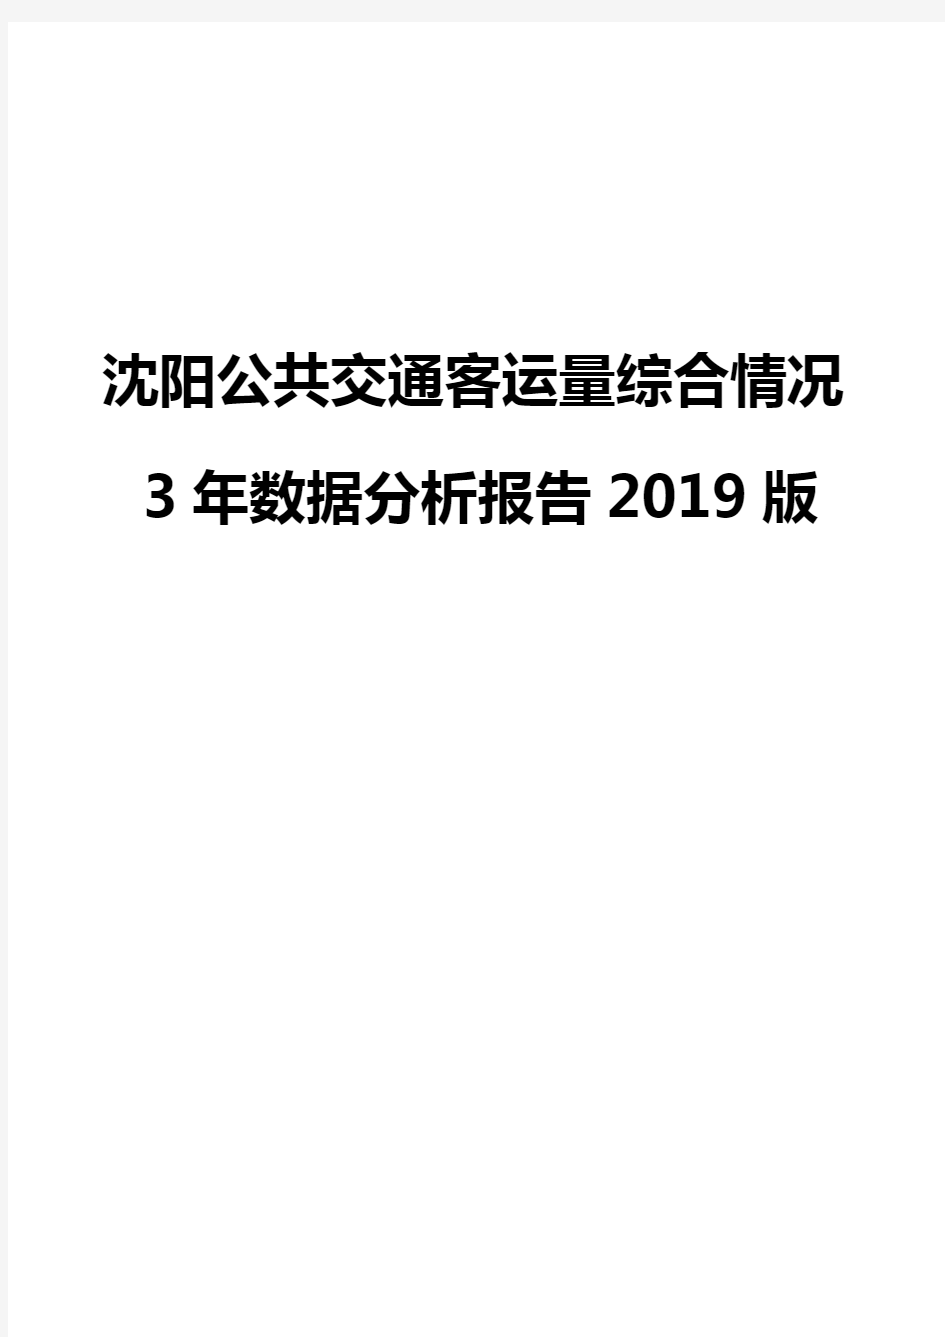 沈阳公共交通客运量综合情况3年数据分析报告2019版